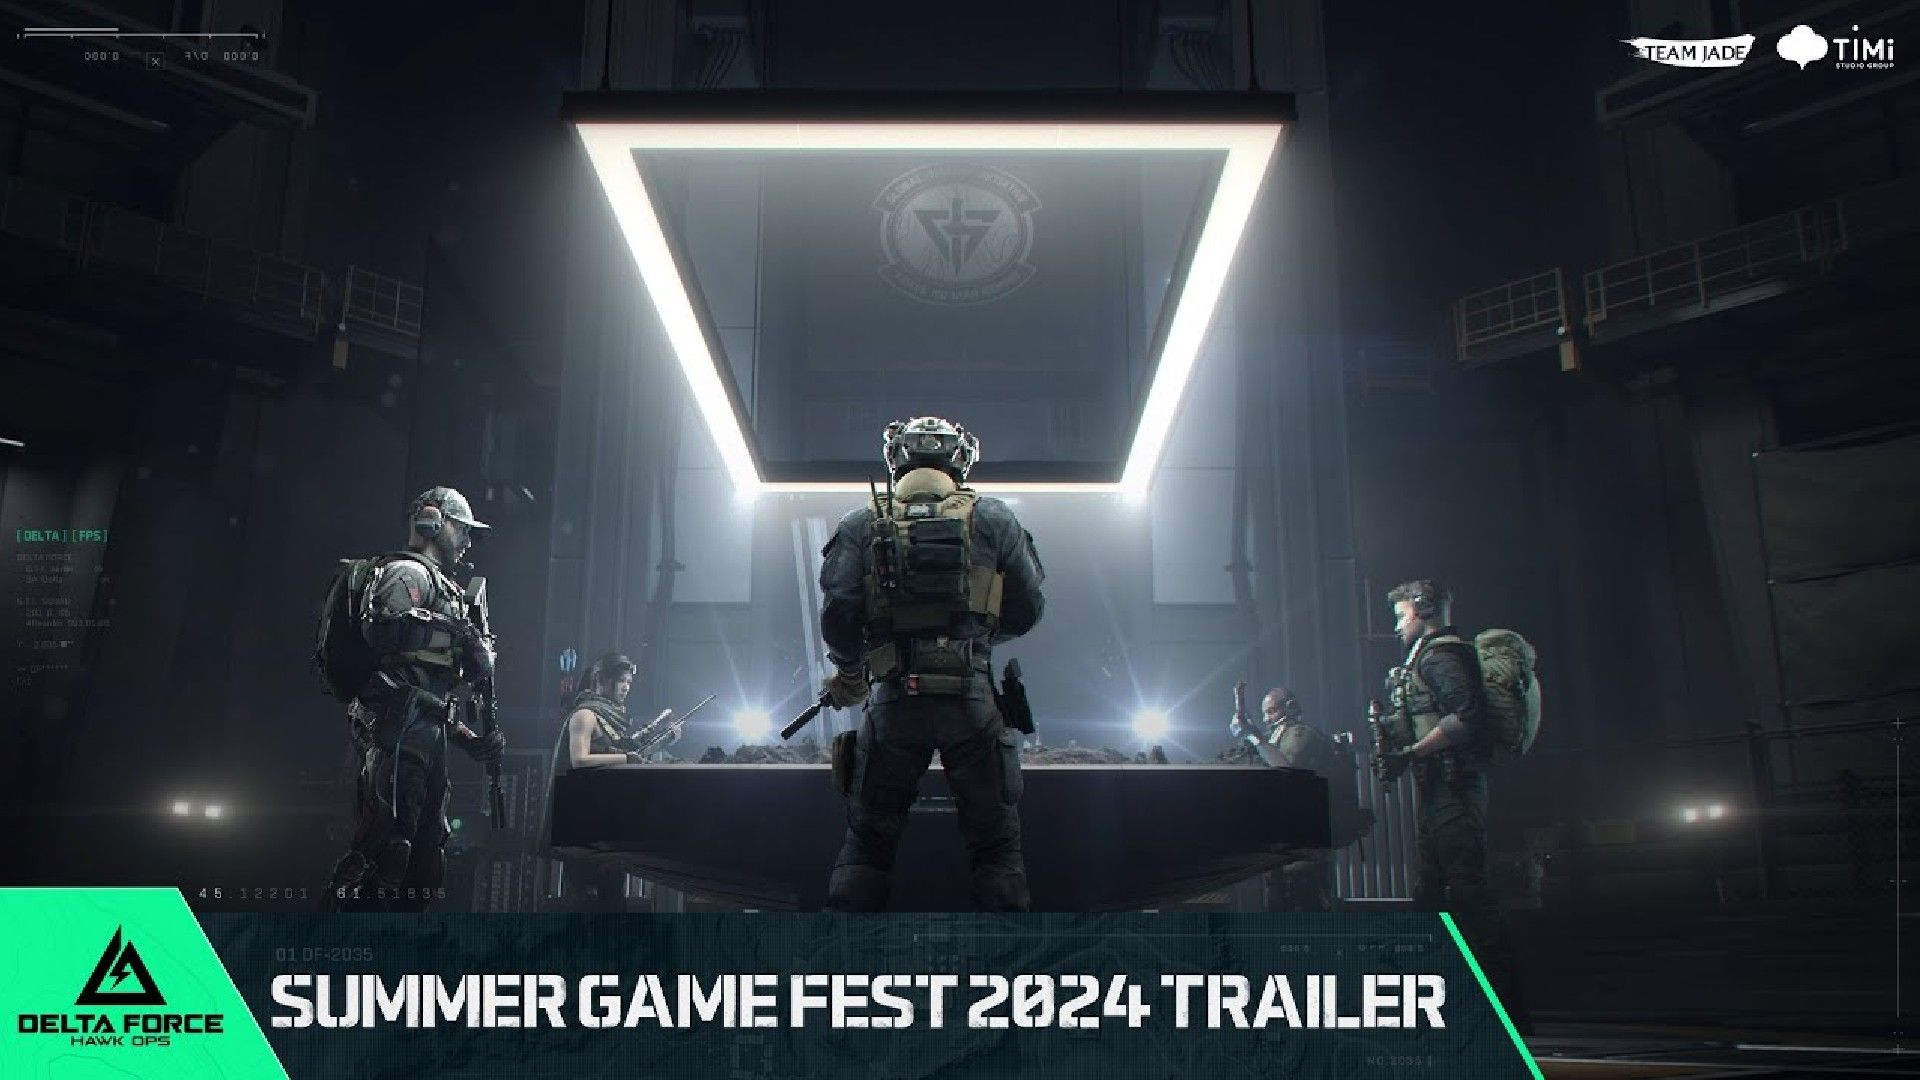 Официальный трейлер Delta Force: Hawk Ops с летнего фестиваля игр 2024 года